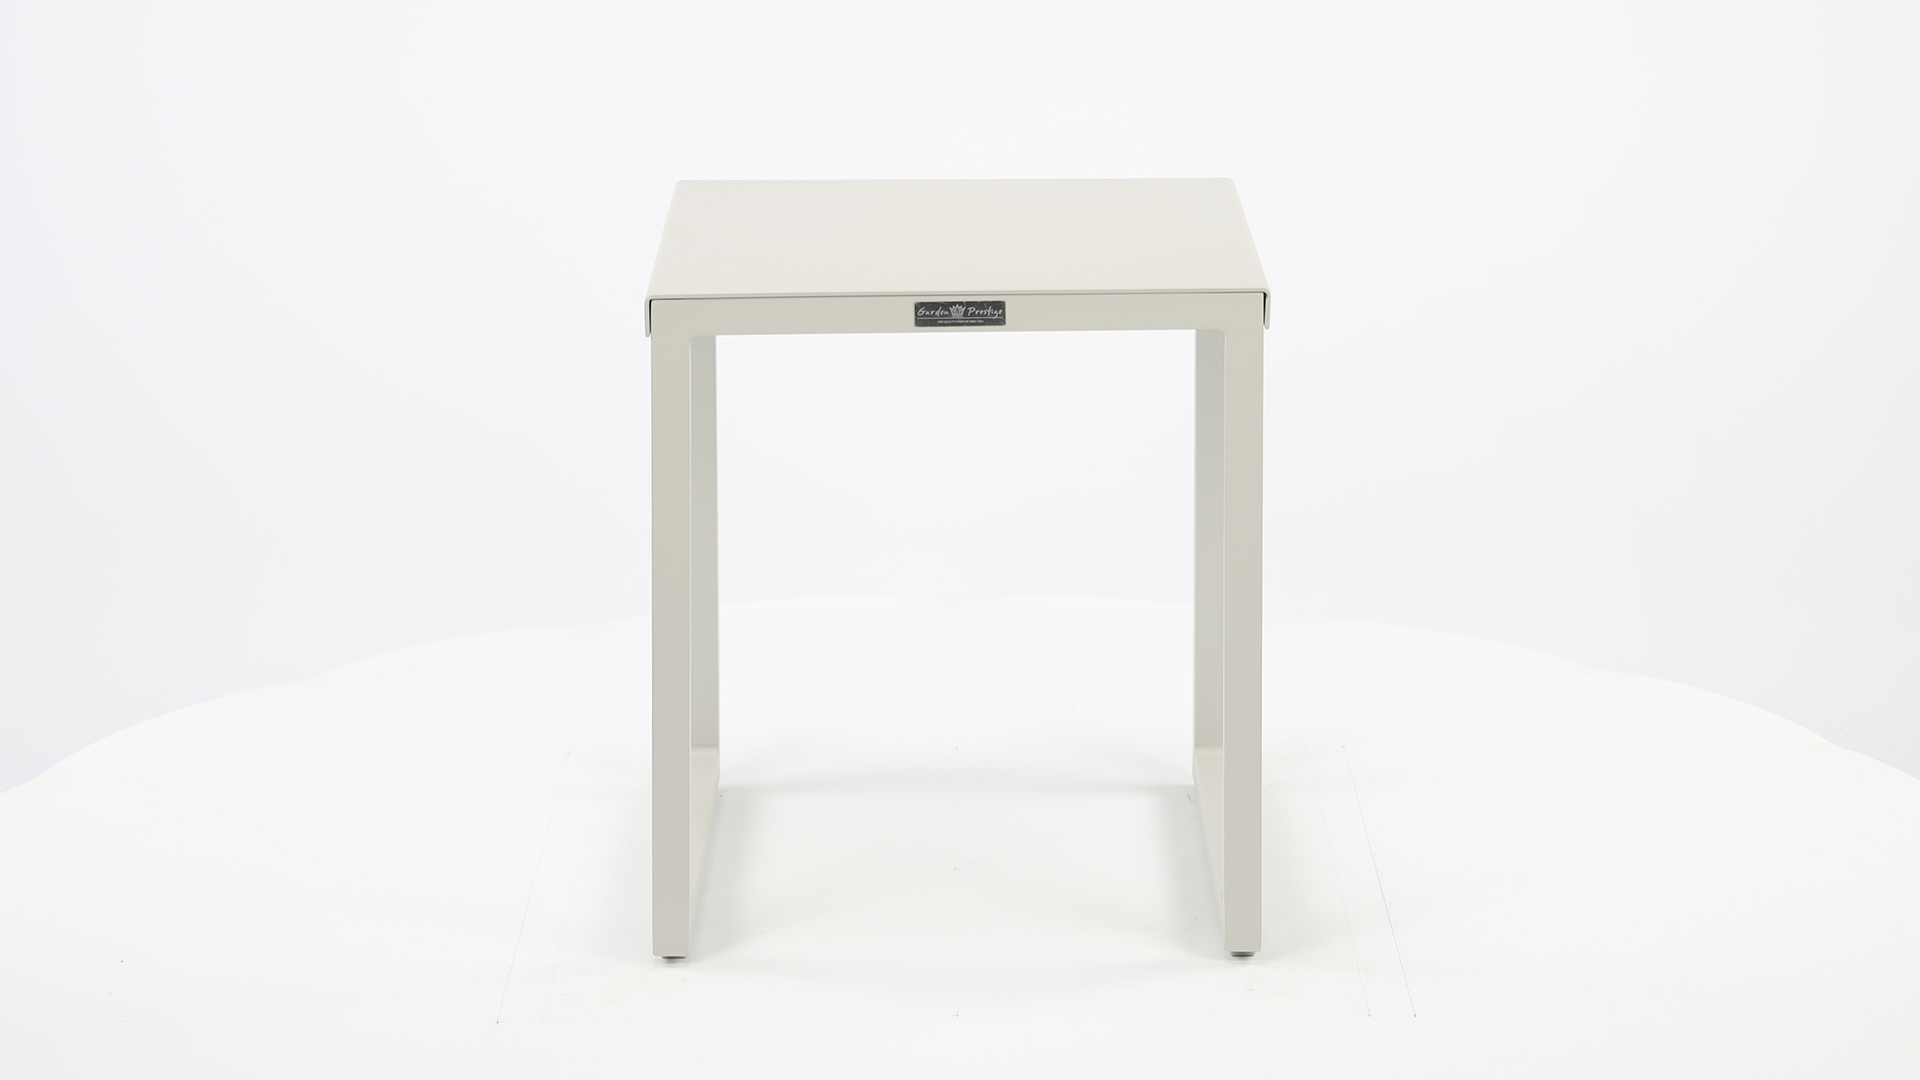 Alu Side Table Basel Mistral Gray Mat 41cm x 41cm x H46cm